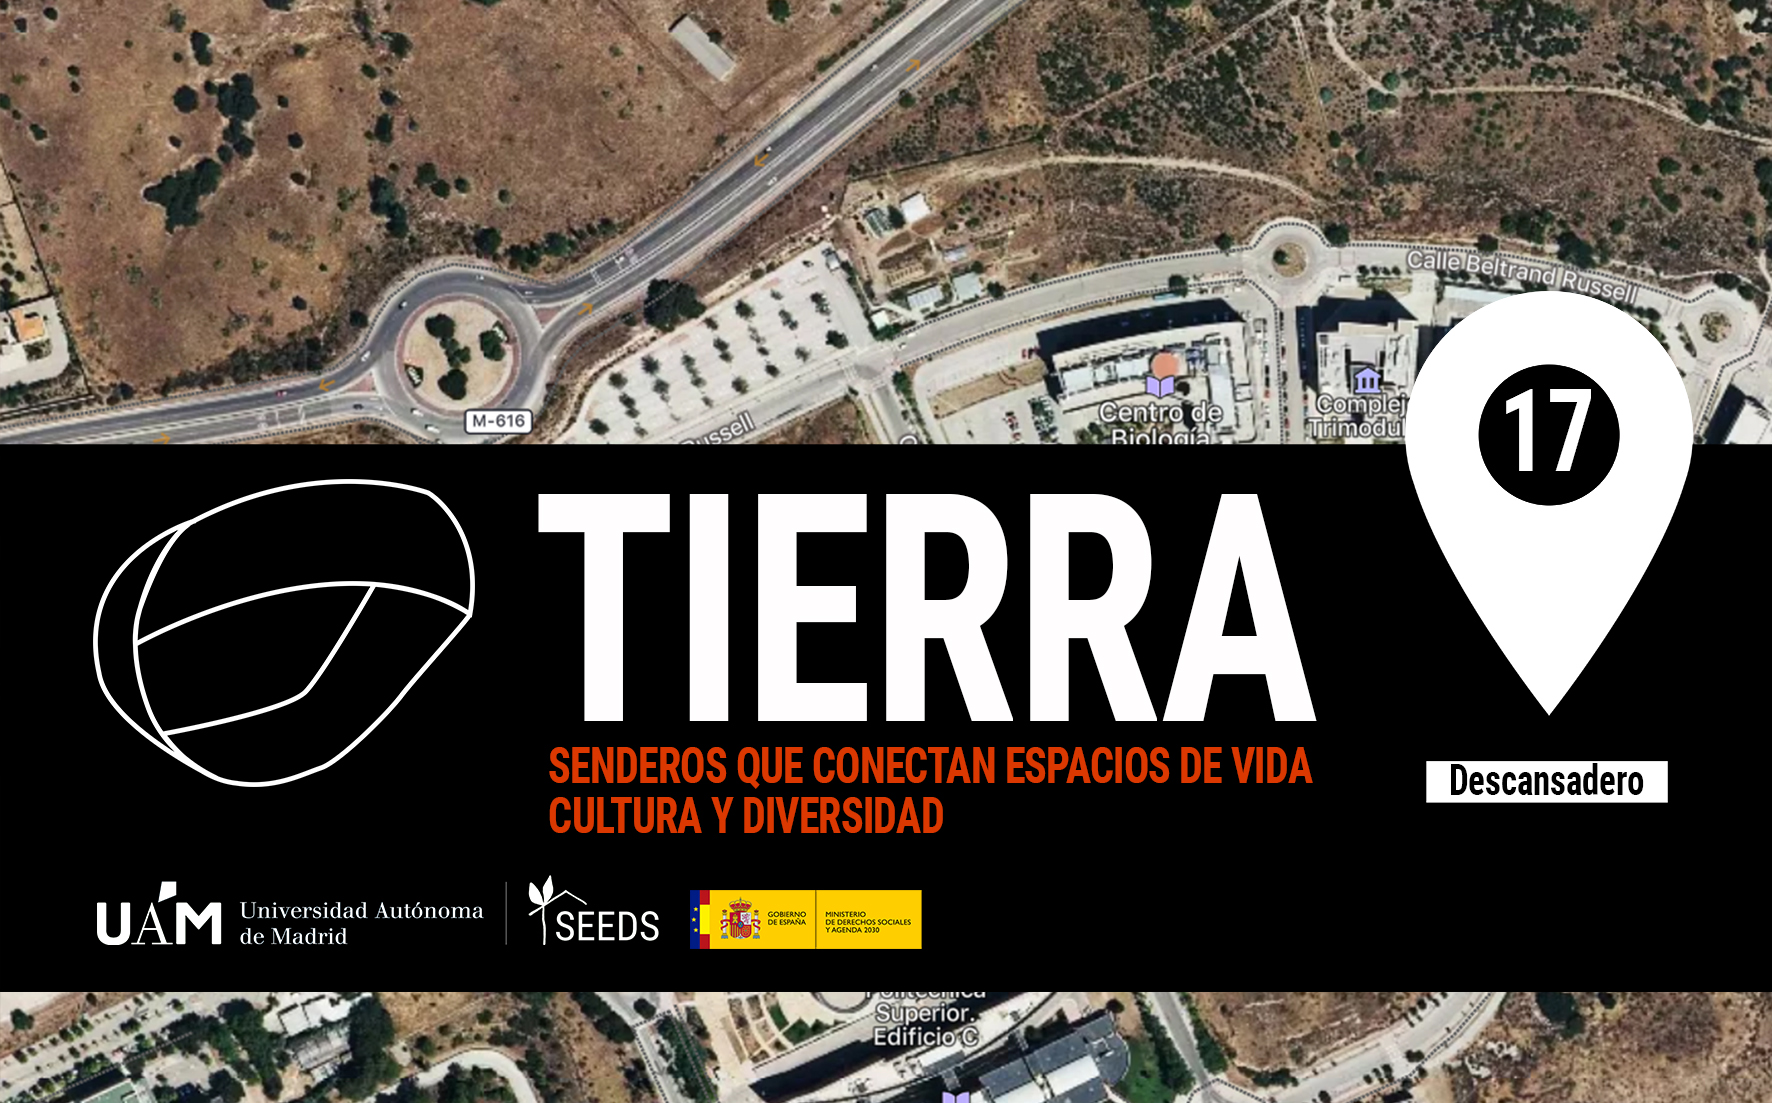 TIERRA: Descansadero 17_Senderos que conectan vida cultura diversidad